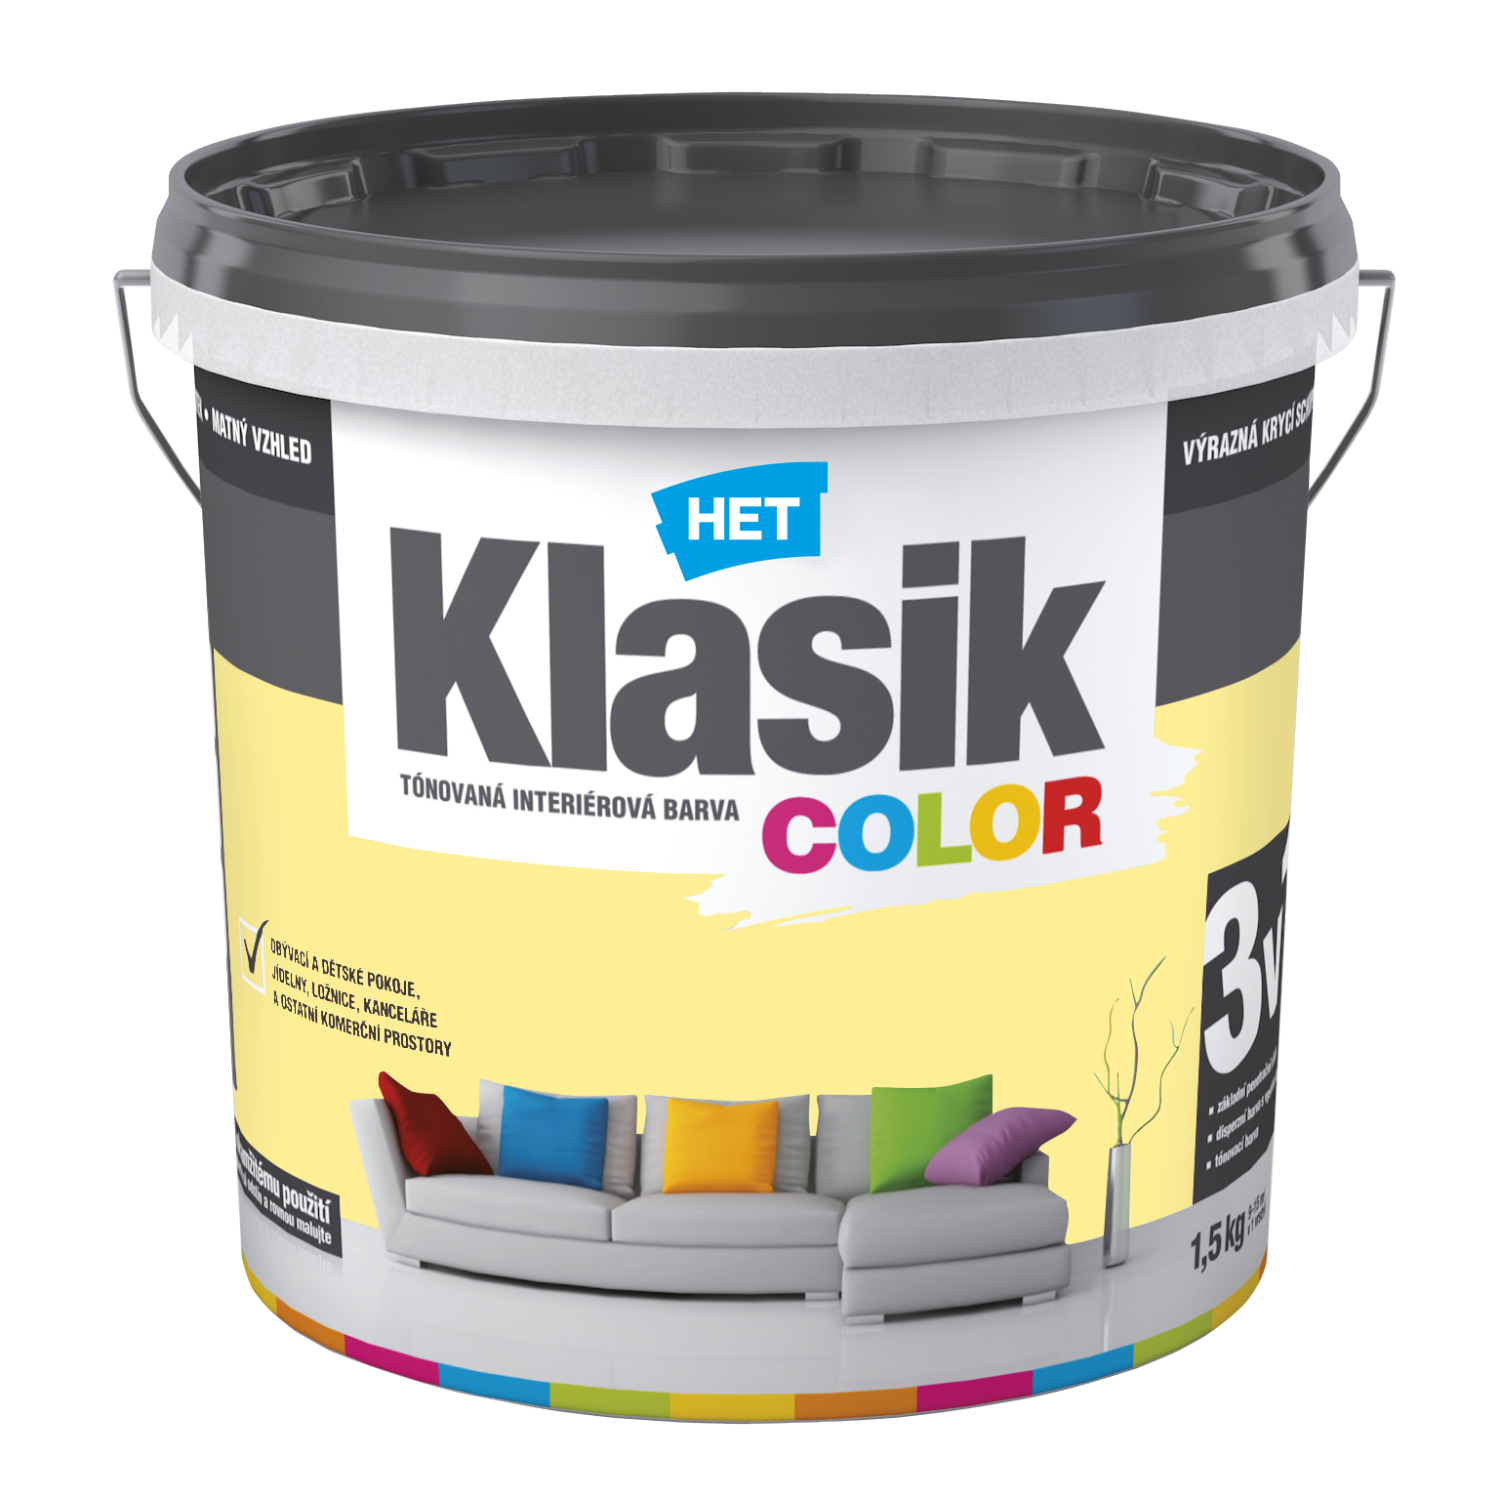 HET Klasik COLOR tónovaná interiérová akrylátová disperzná oteruvzdorná farba 1,5 kg, KC0608 - žltý zázvorový